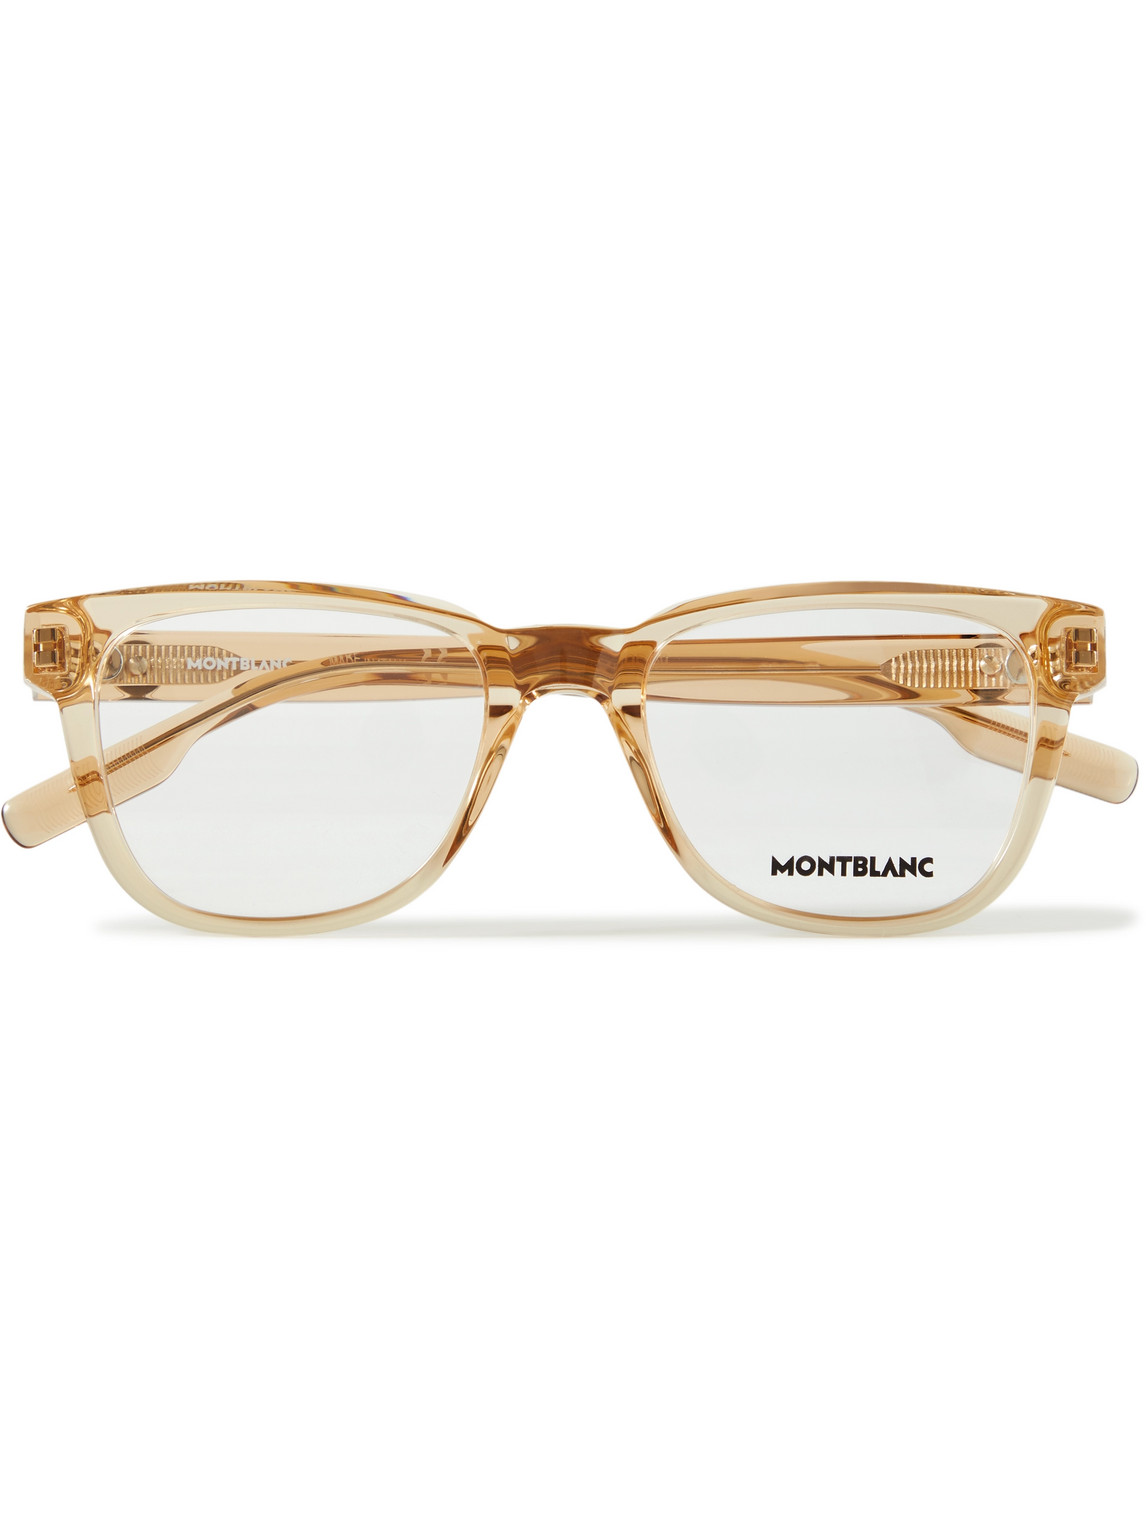 Montblanc Square-frame Acetate Optical Glasses In Orange